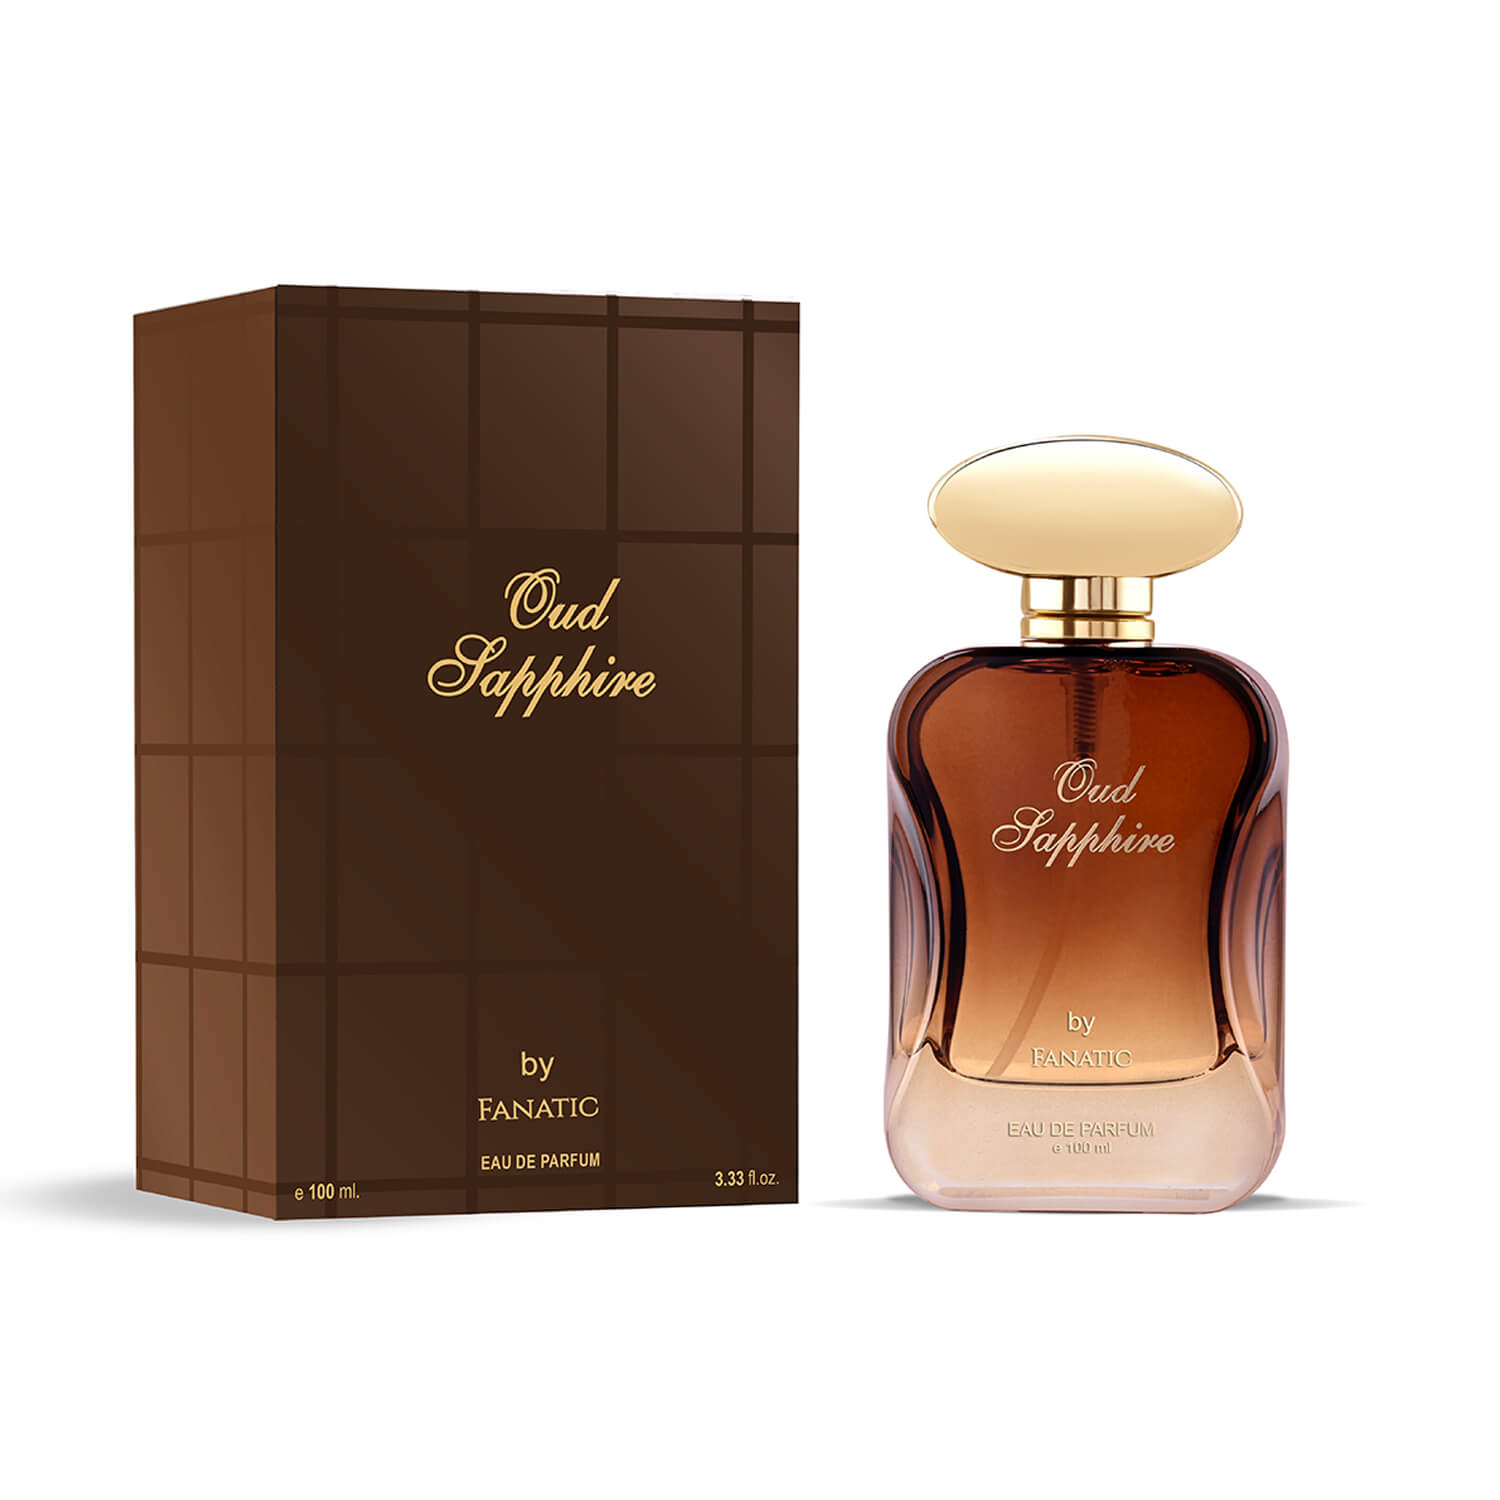 OUD SAPPHIRE EDP Perfume (100 ml)